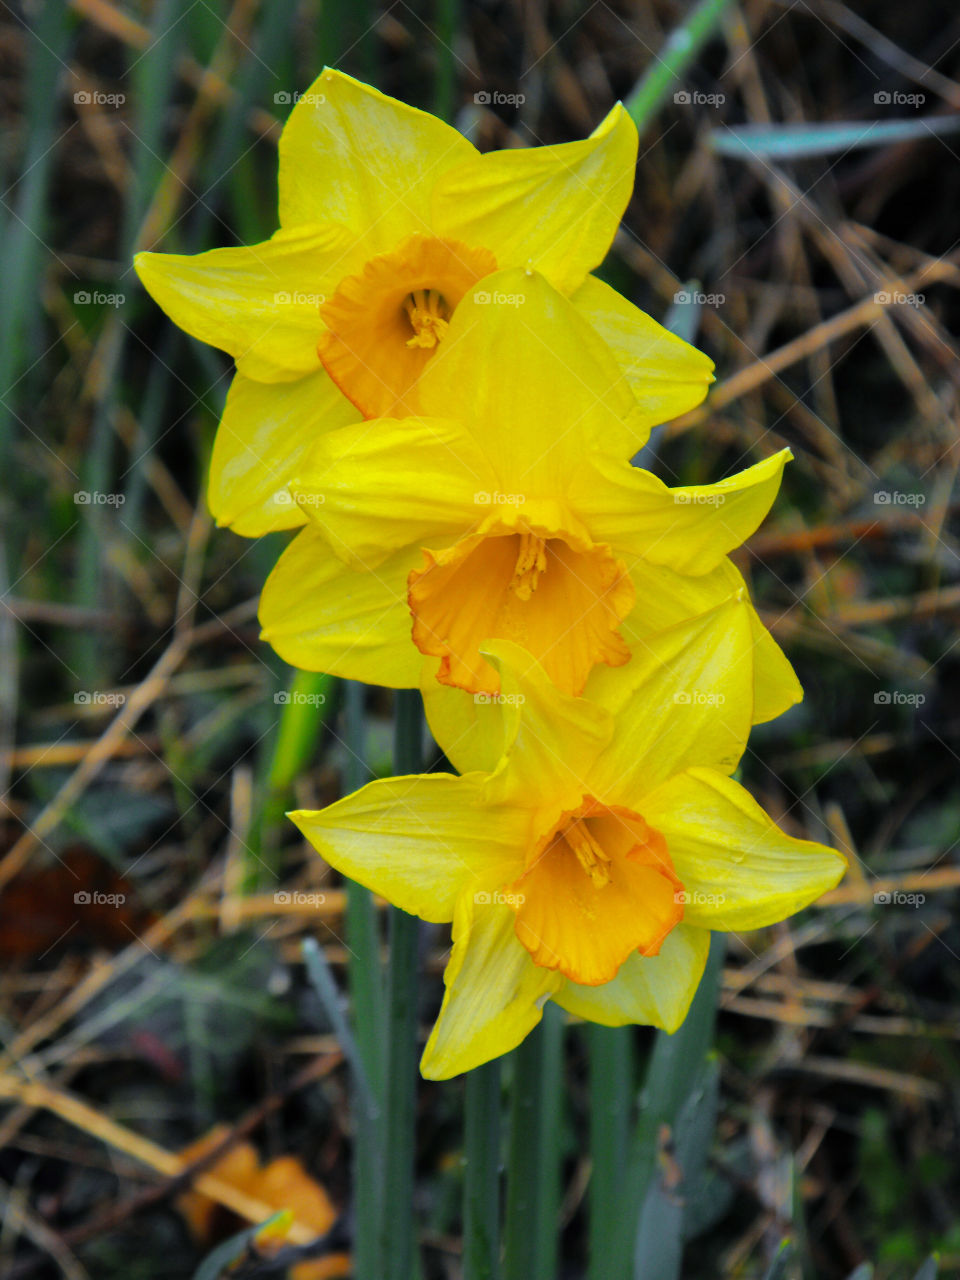 Three daffodils in a row